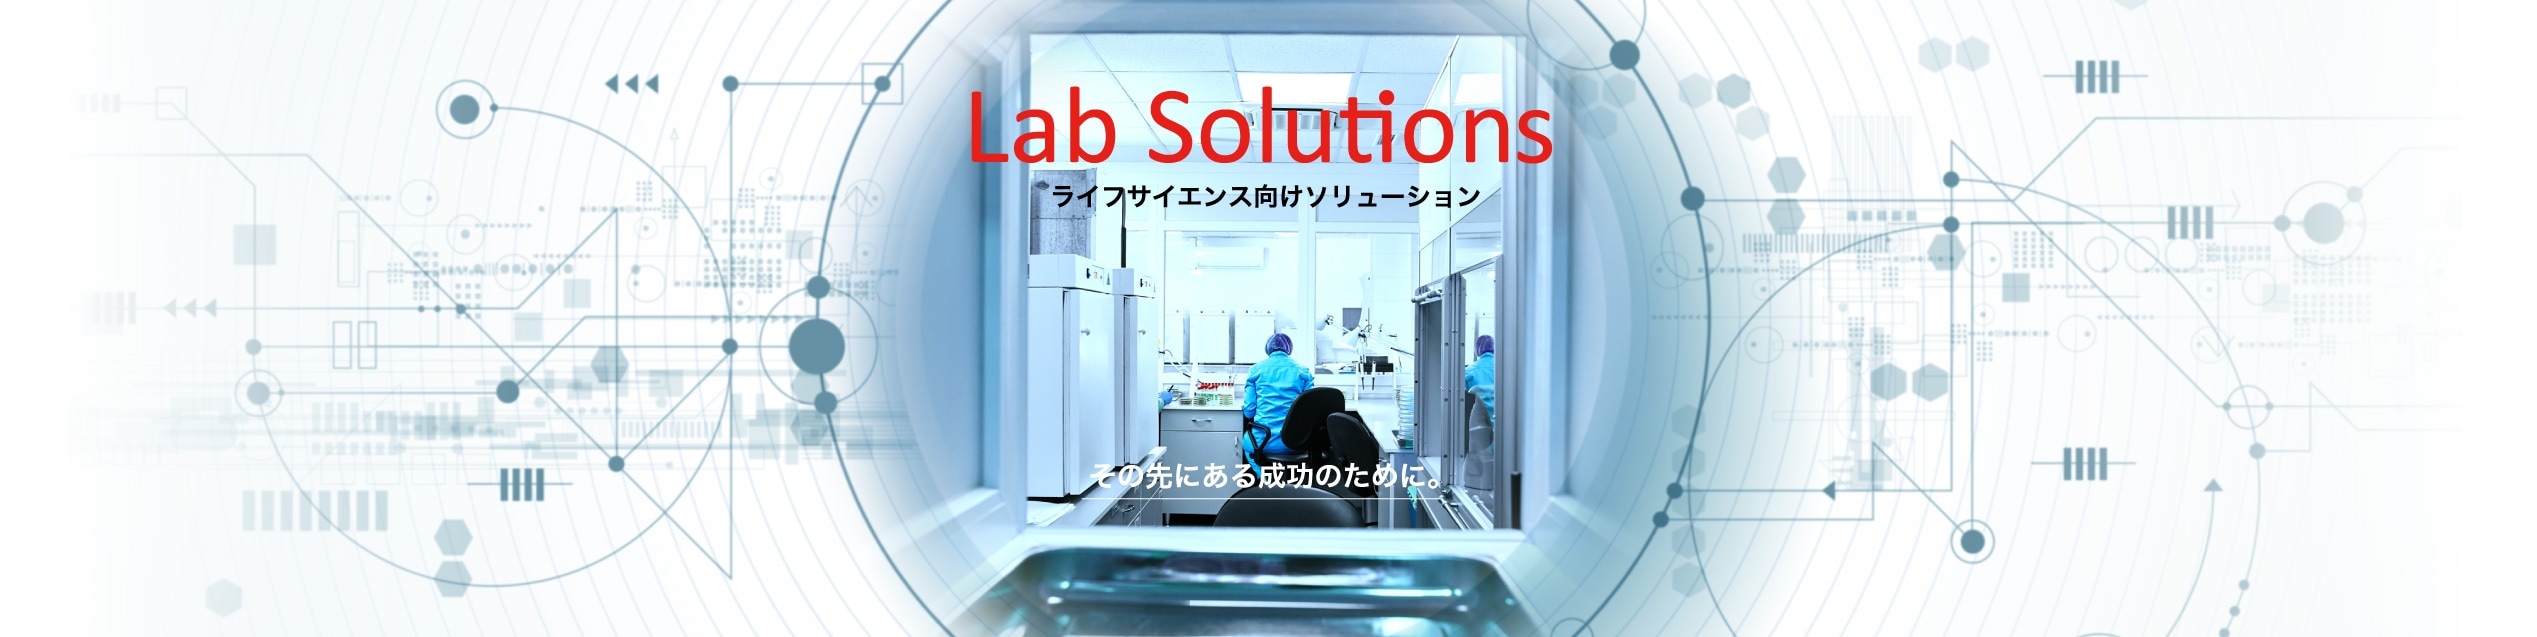 Lab Solutions ライフサイエンス向けソリューション その先にある成功のために